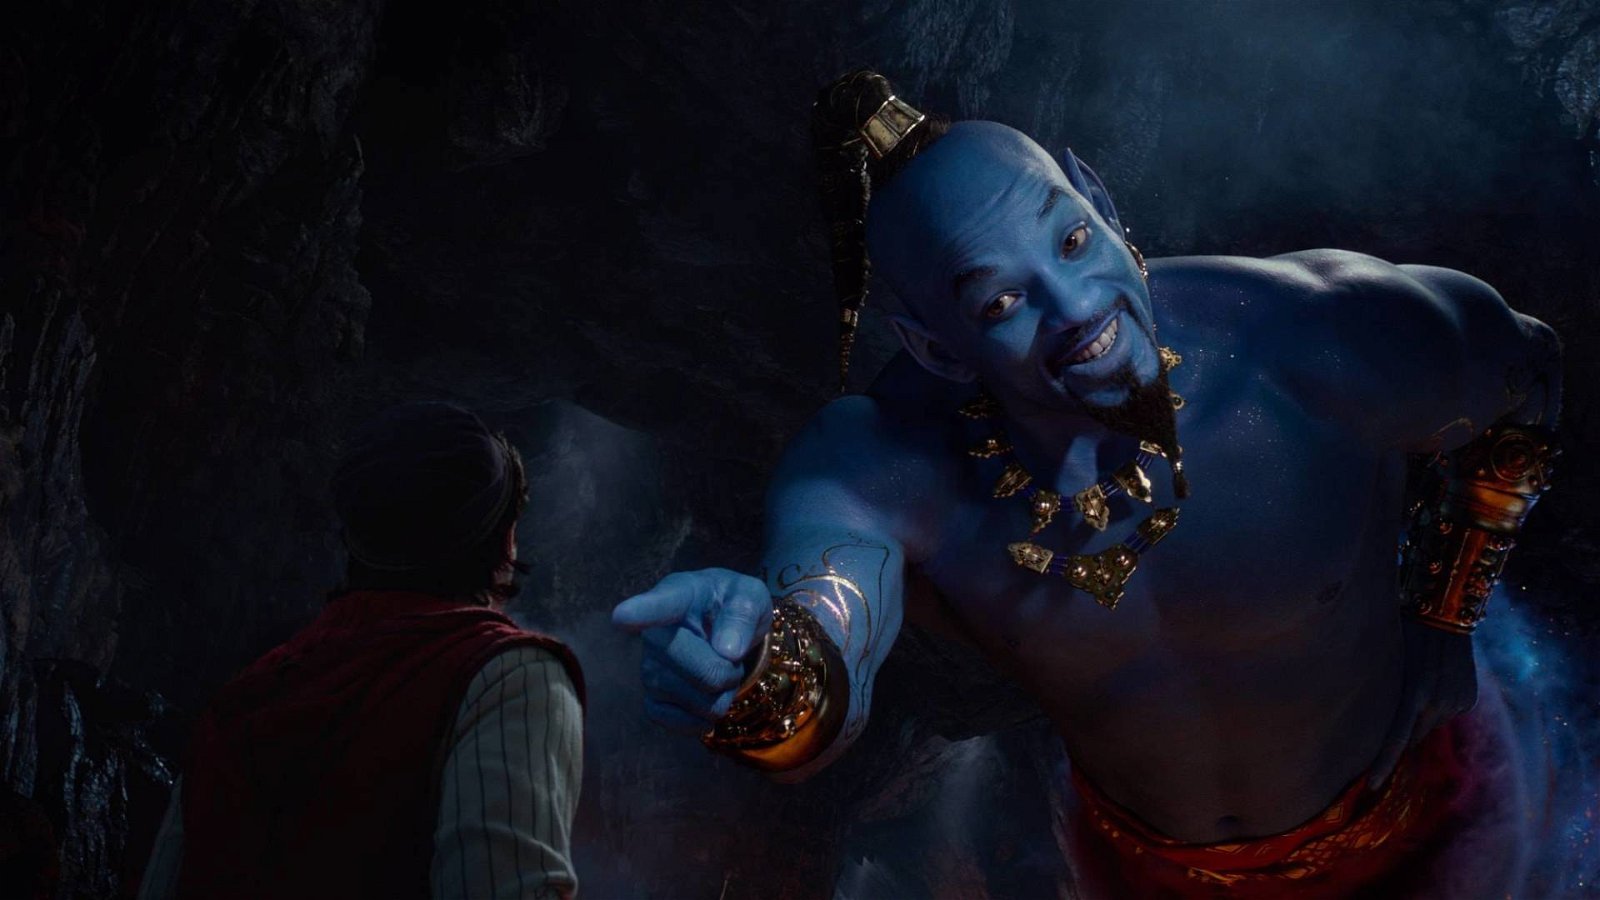 Immagine di Aladdin si mostra in un nuovo trailer, Naomi sarà la voce di Jasmine